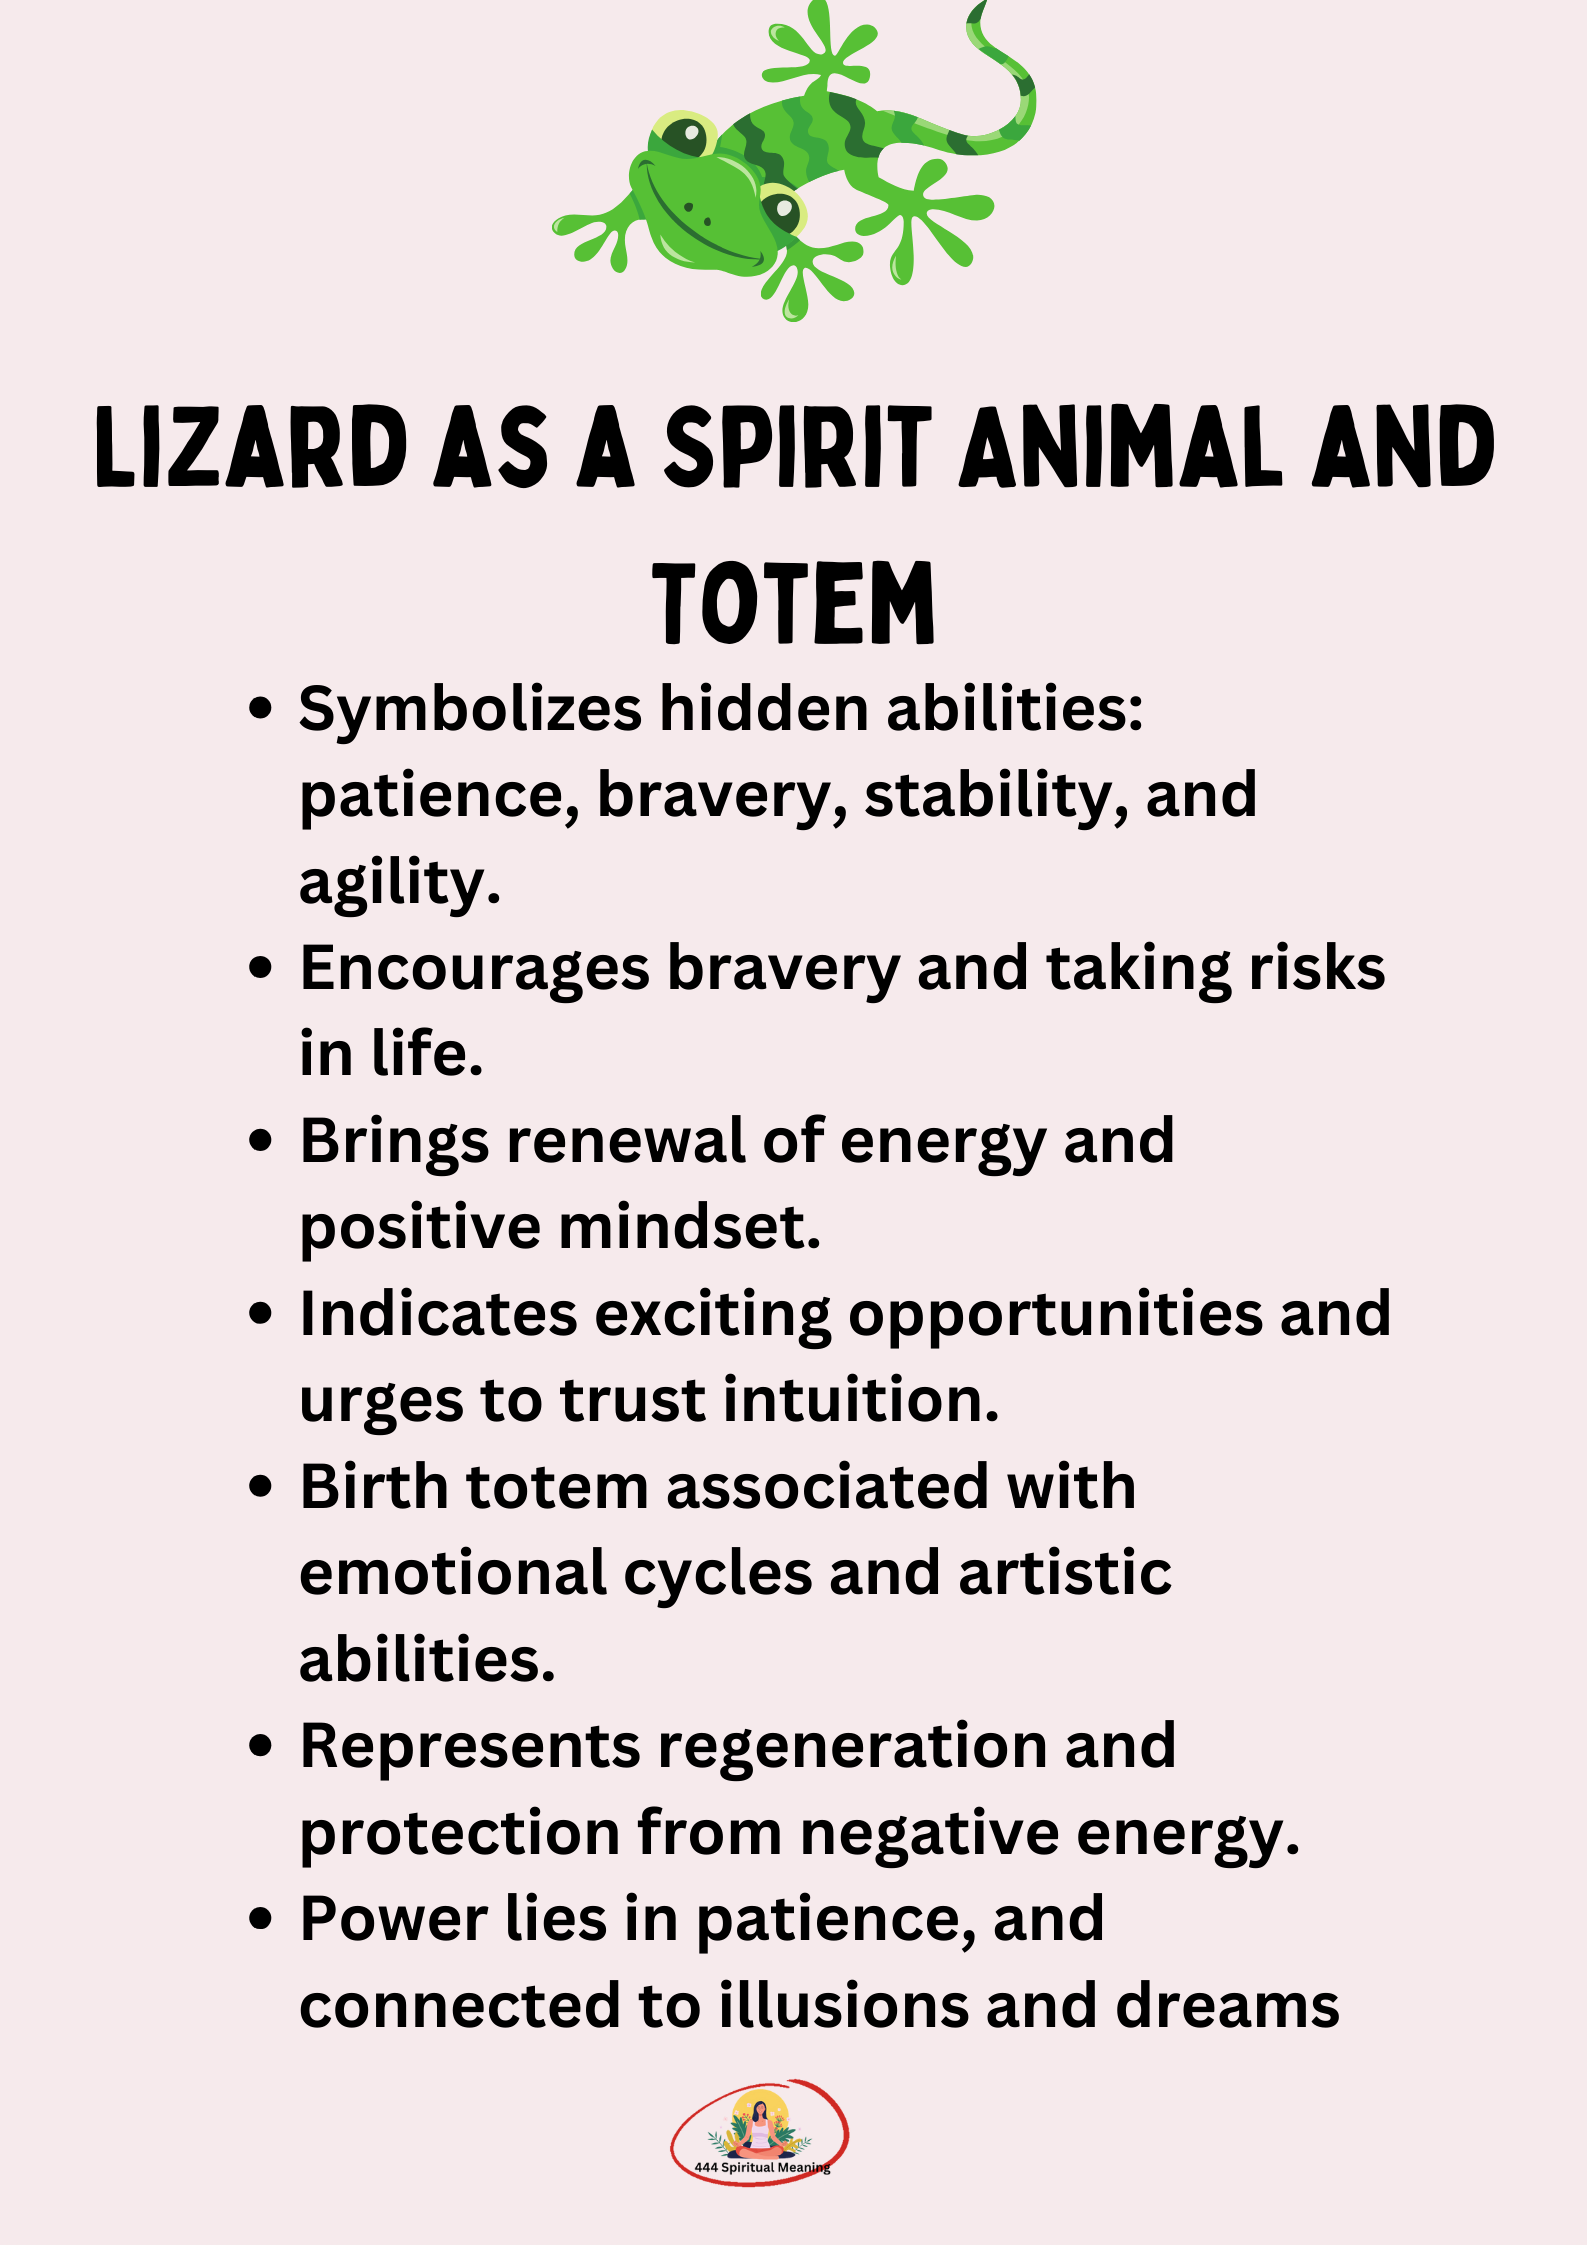 Lizard as a Spirit Animal and Totem